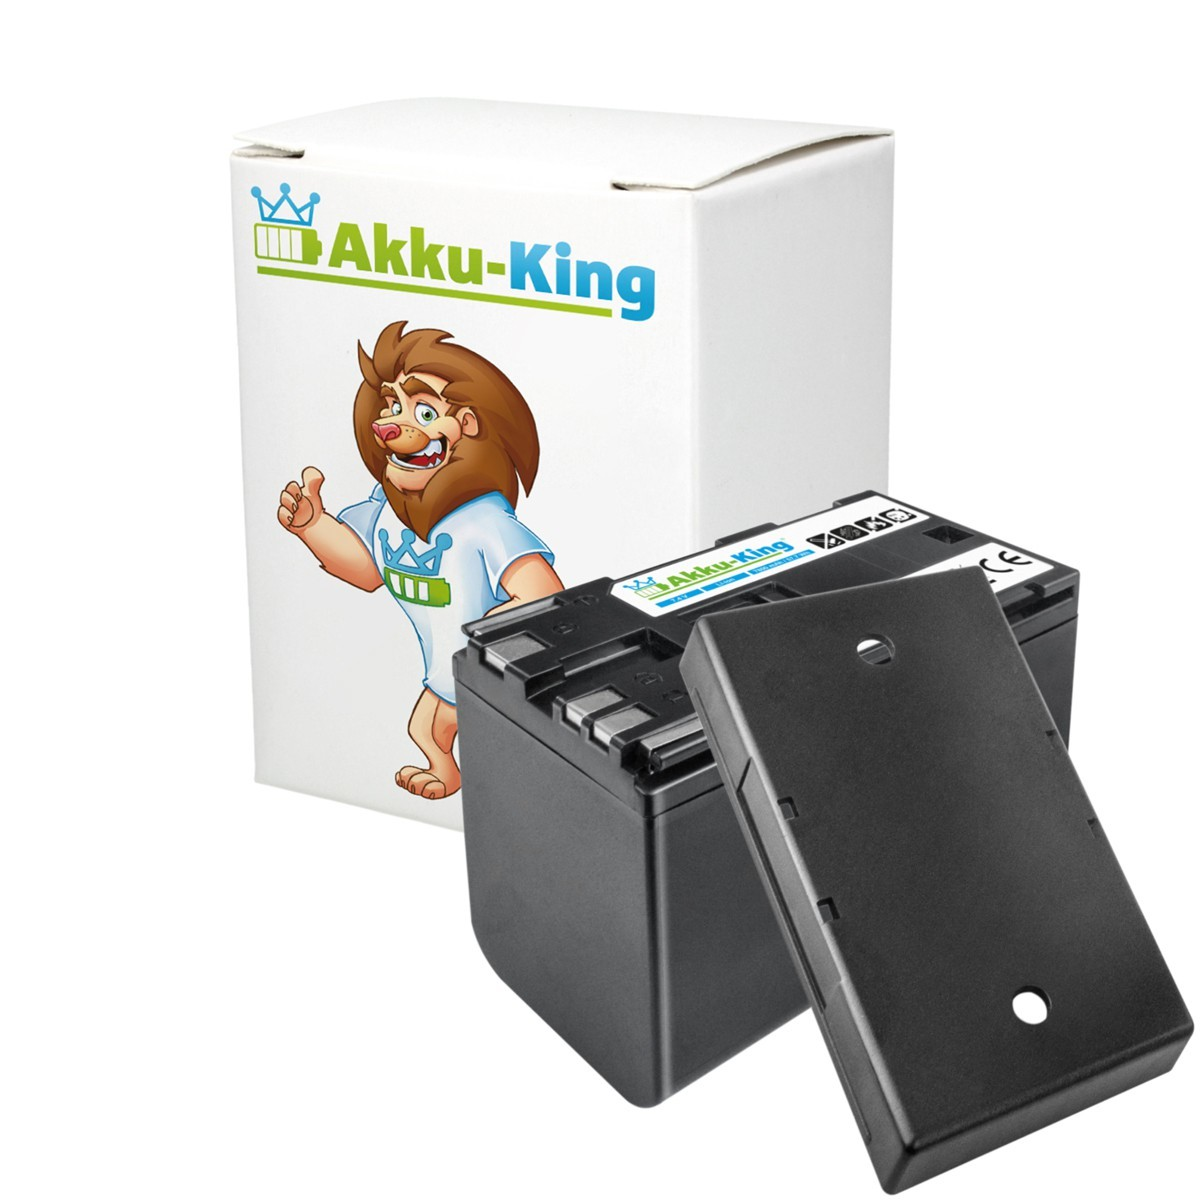 AKKU-KING Akku kompatibel mit Canon 7.4 BP-970G Li-Ion 7800mAh Kamera-Akku, Volt